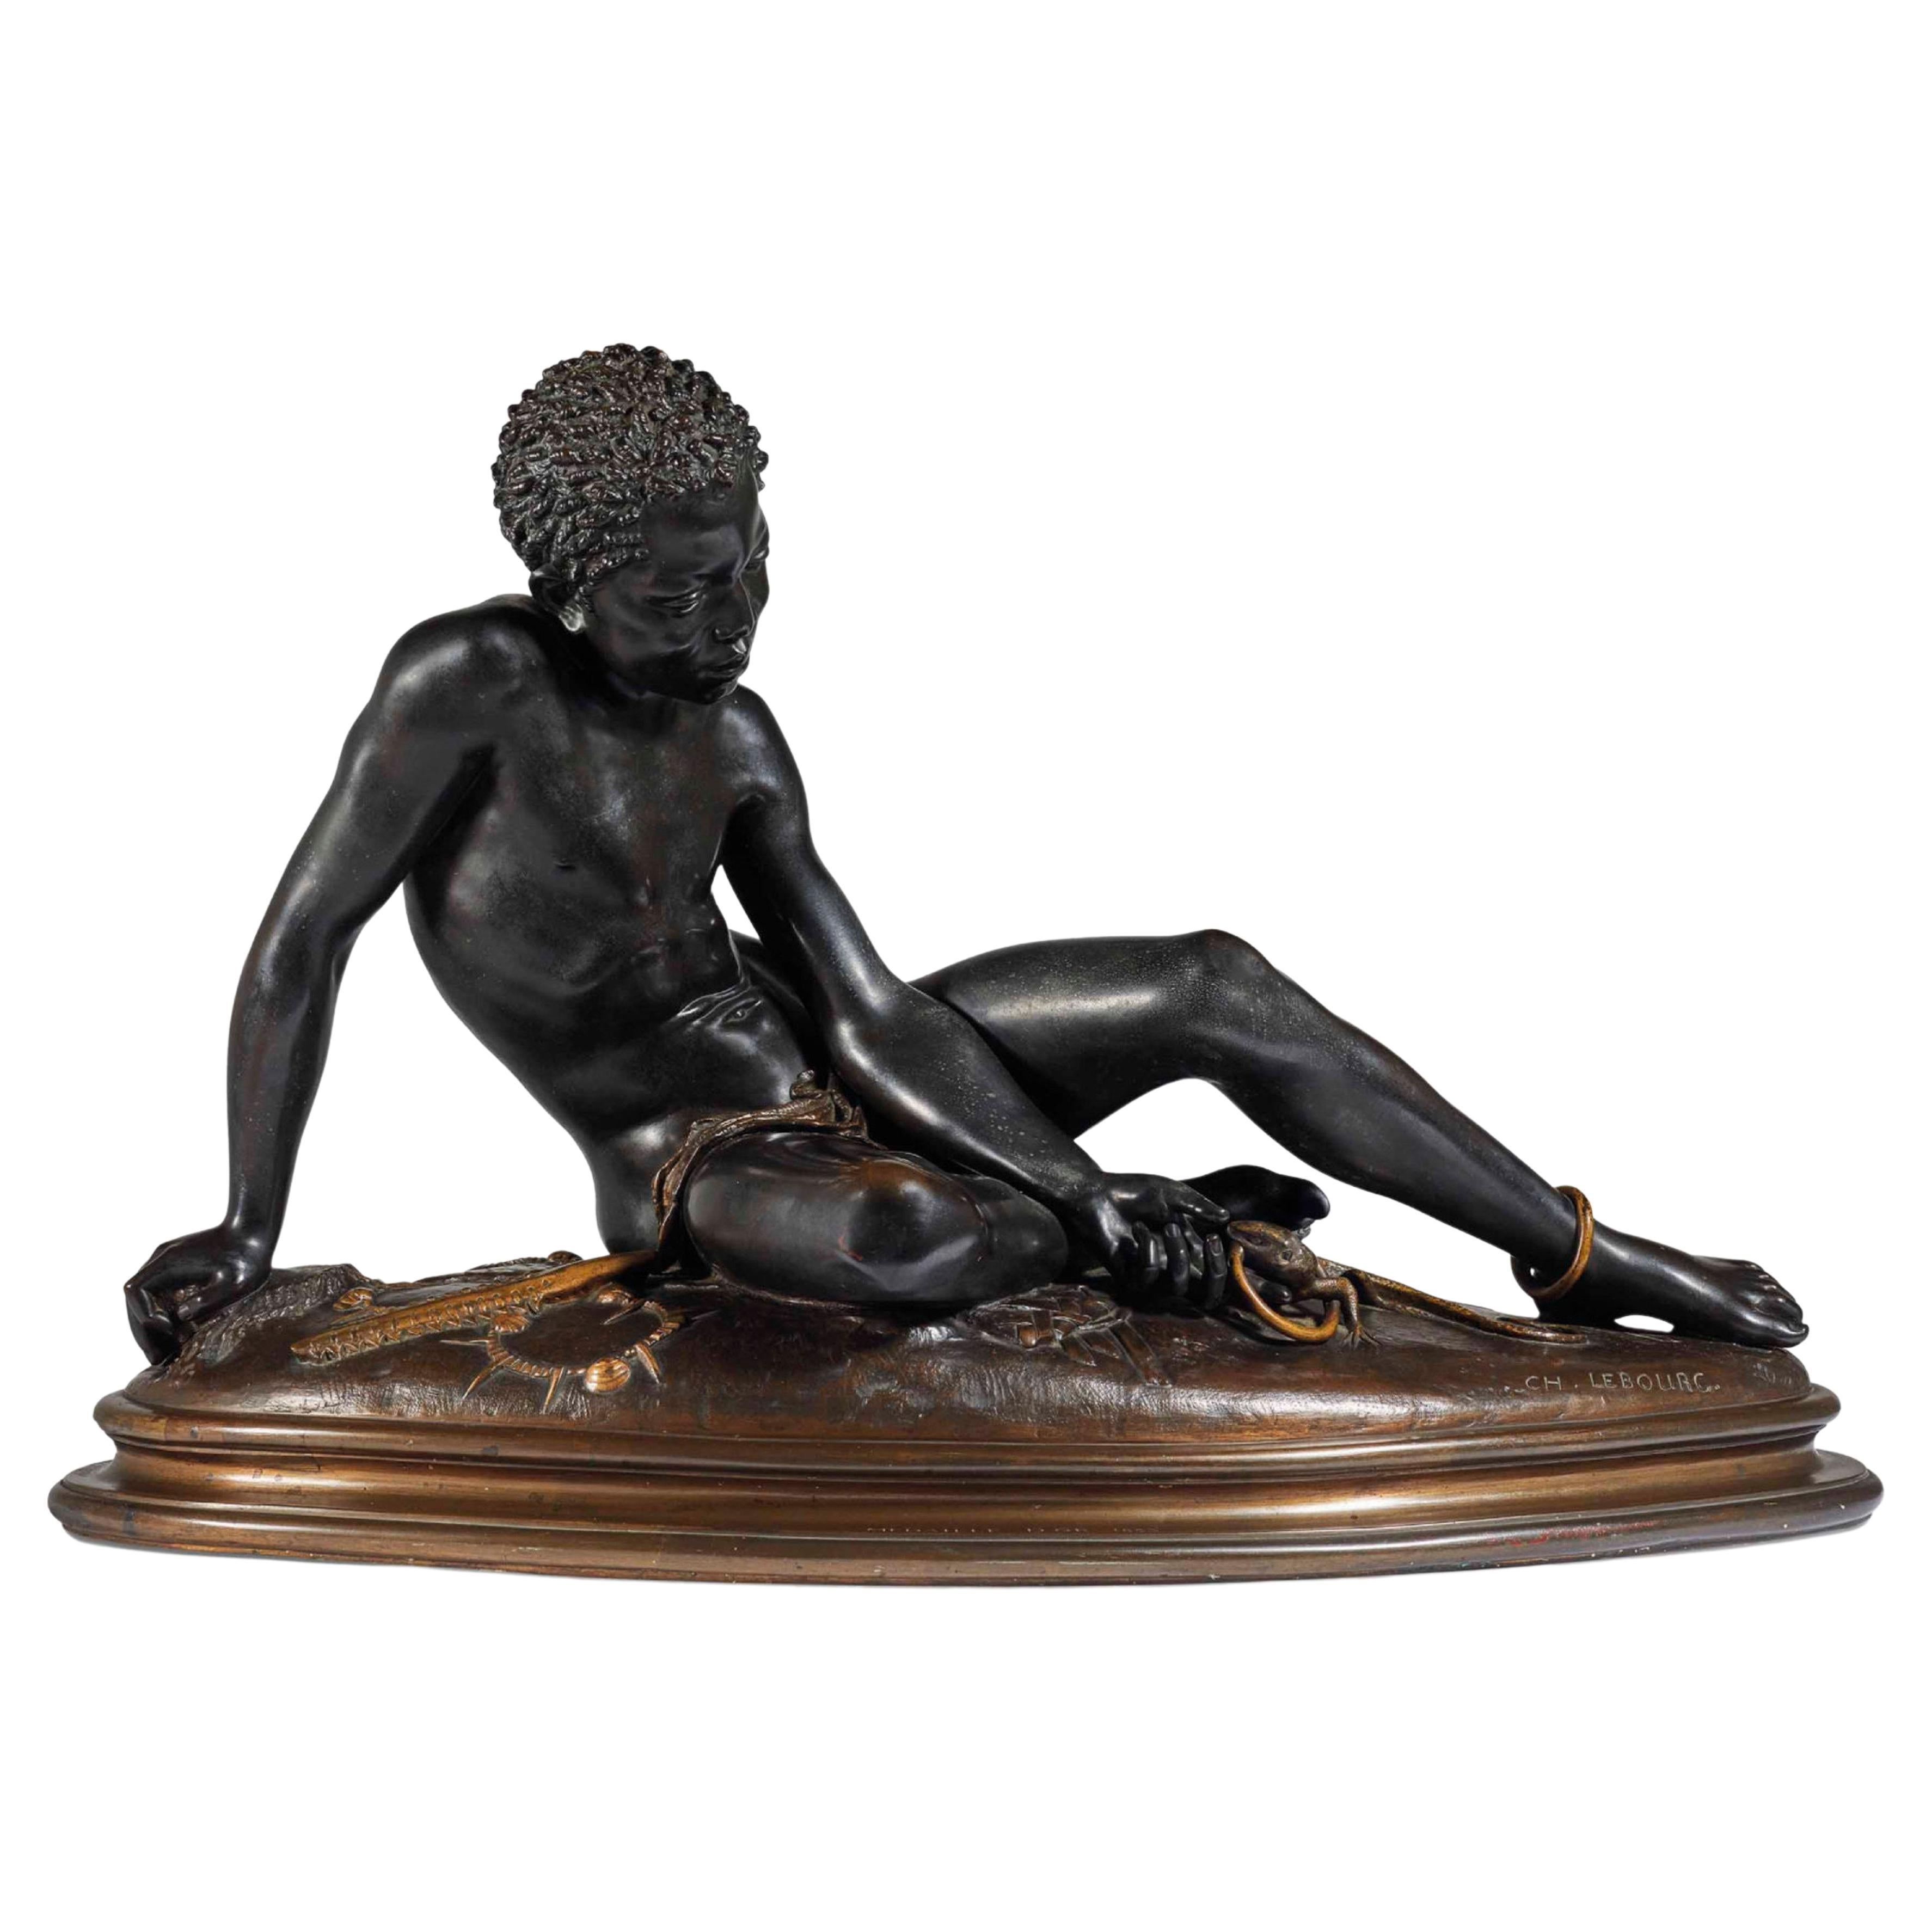 Orientalische Bronzeskulptur von Charles Auguste Lebourg